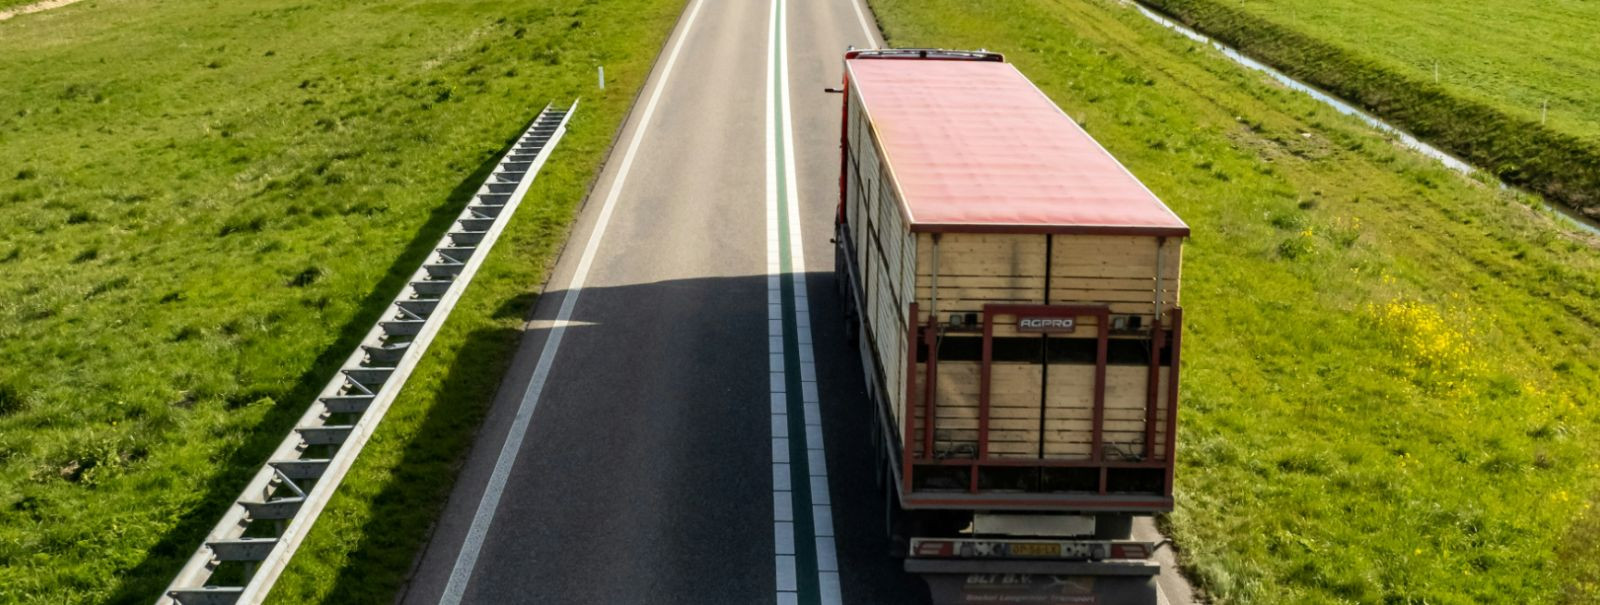 Maanteetransport on kaupade liigutamise protsess maanteedel kasutades ...